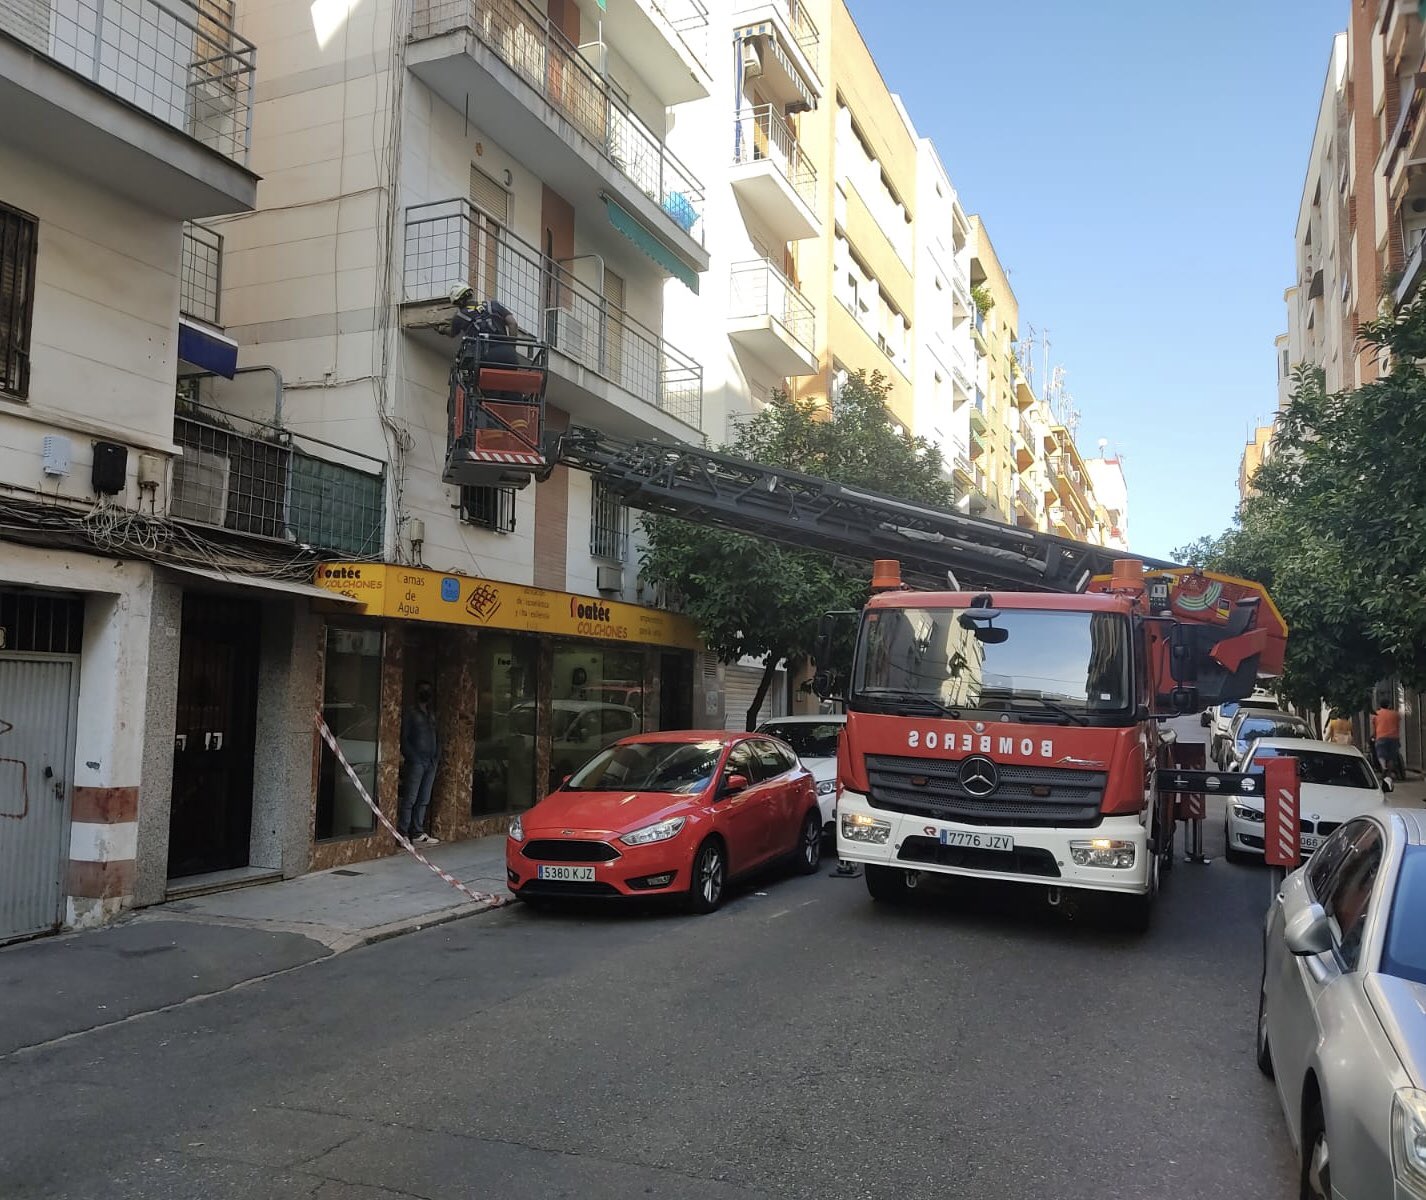 Córdoba_bomberos en Twitter: "Lo que comentábamos ayer. No todo son incendios. Hoy, saneamiento de fachada en Alcalde De la Cruz Ceballos. https://t.co/8ejWarMuG0" / Twitter